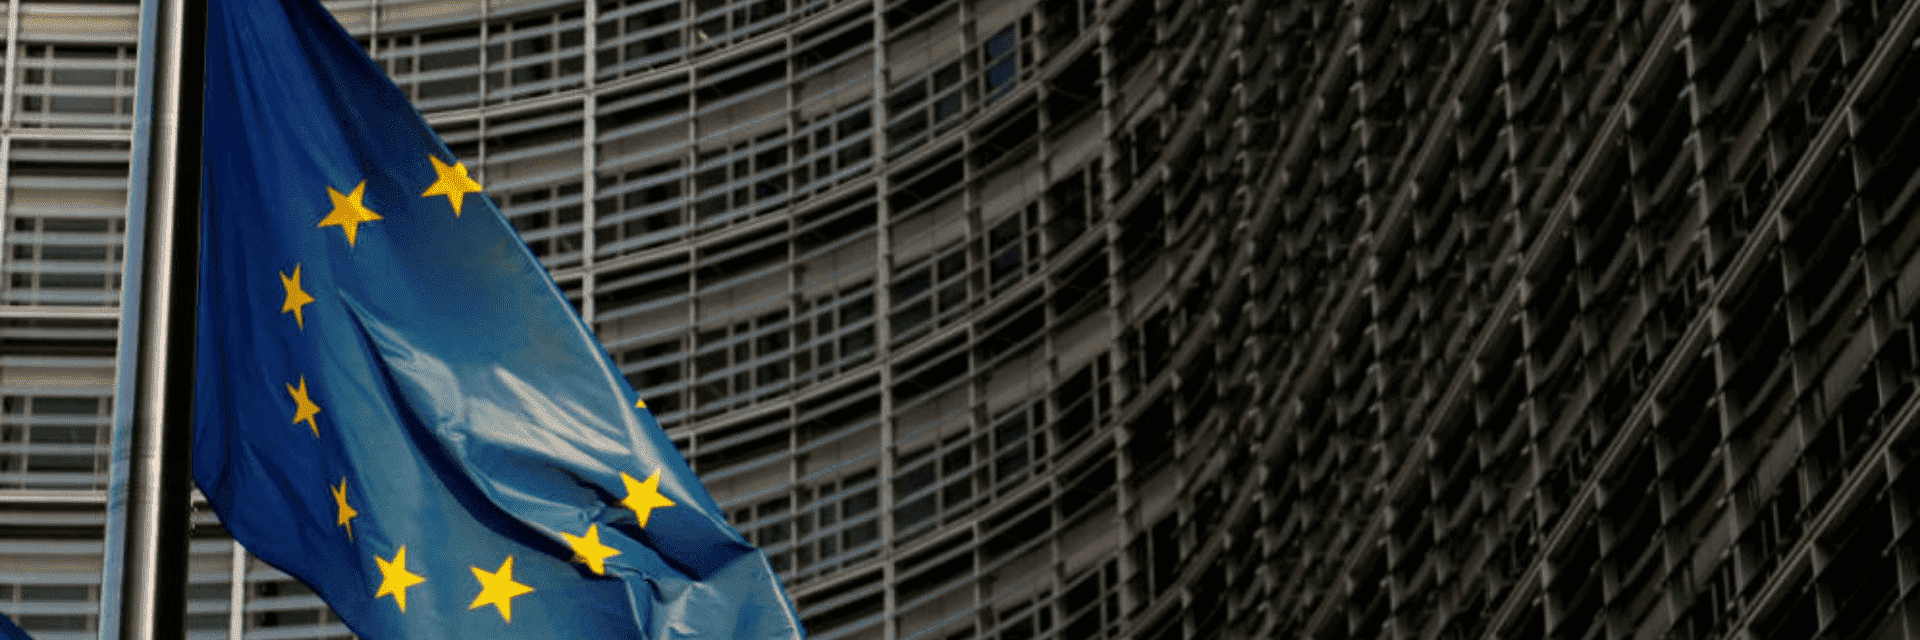 Imagen con la bandera de la Unión Europea